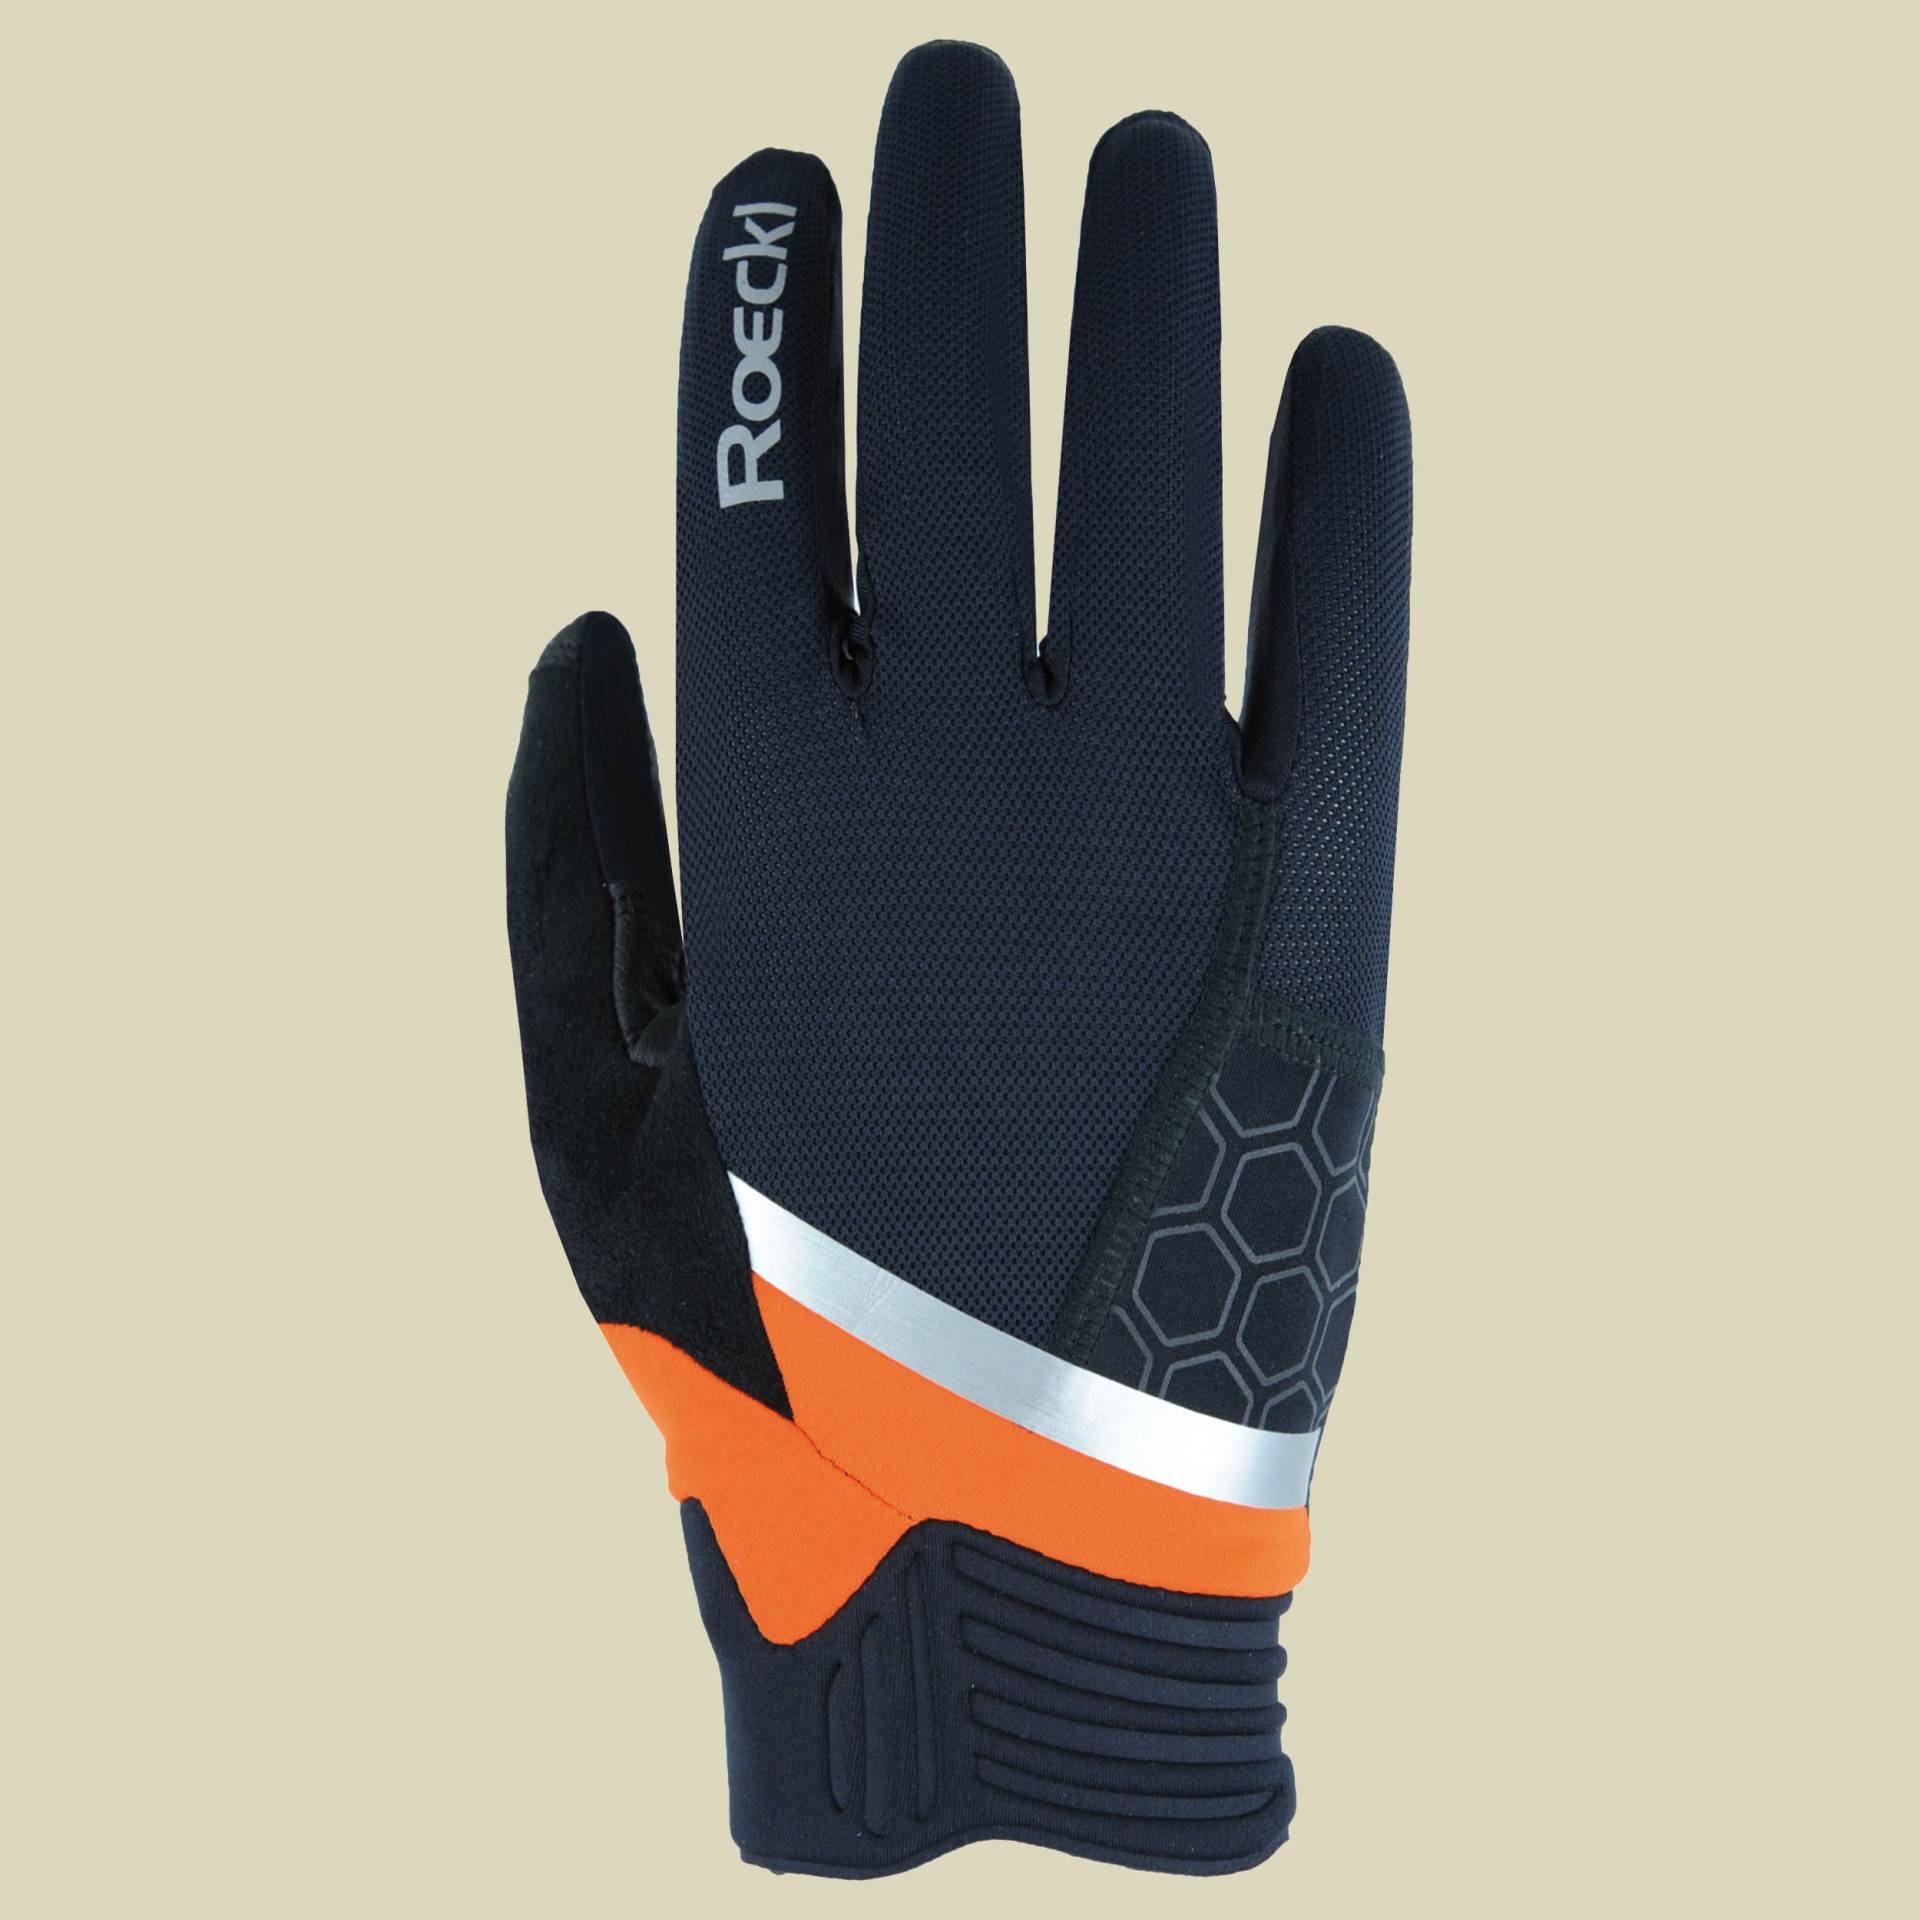 Morgex Größe 9,5 Farbe schwarz/orange von Roeckl Sports